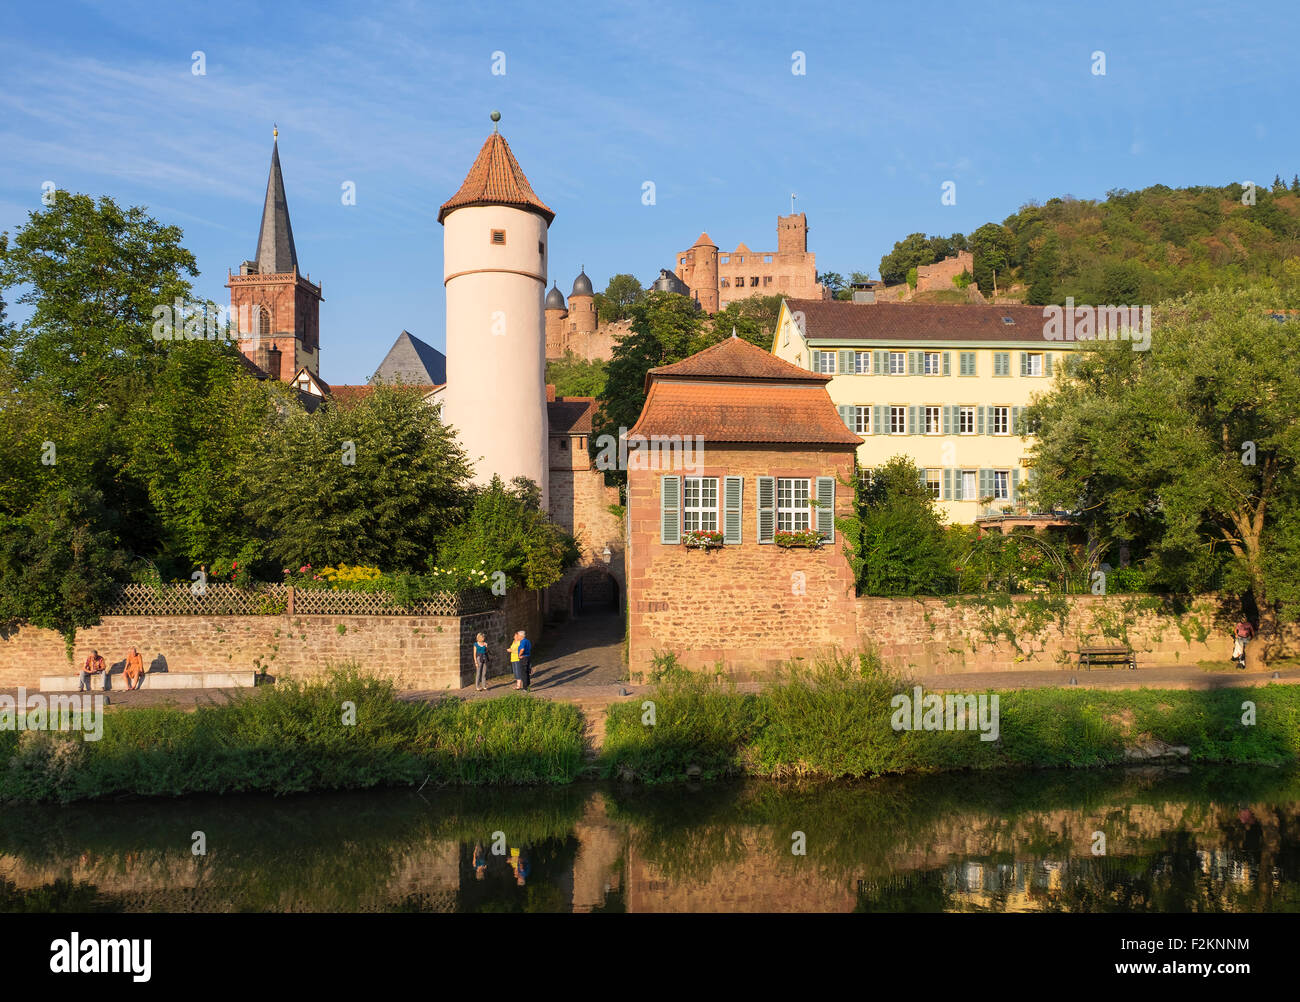 Fluss Tauber, Kittsteintor, roten Turm, Stadtkirche und Burg Ruinen, Wertheim, Baden-Württemberg, Deutschland Stockfoto